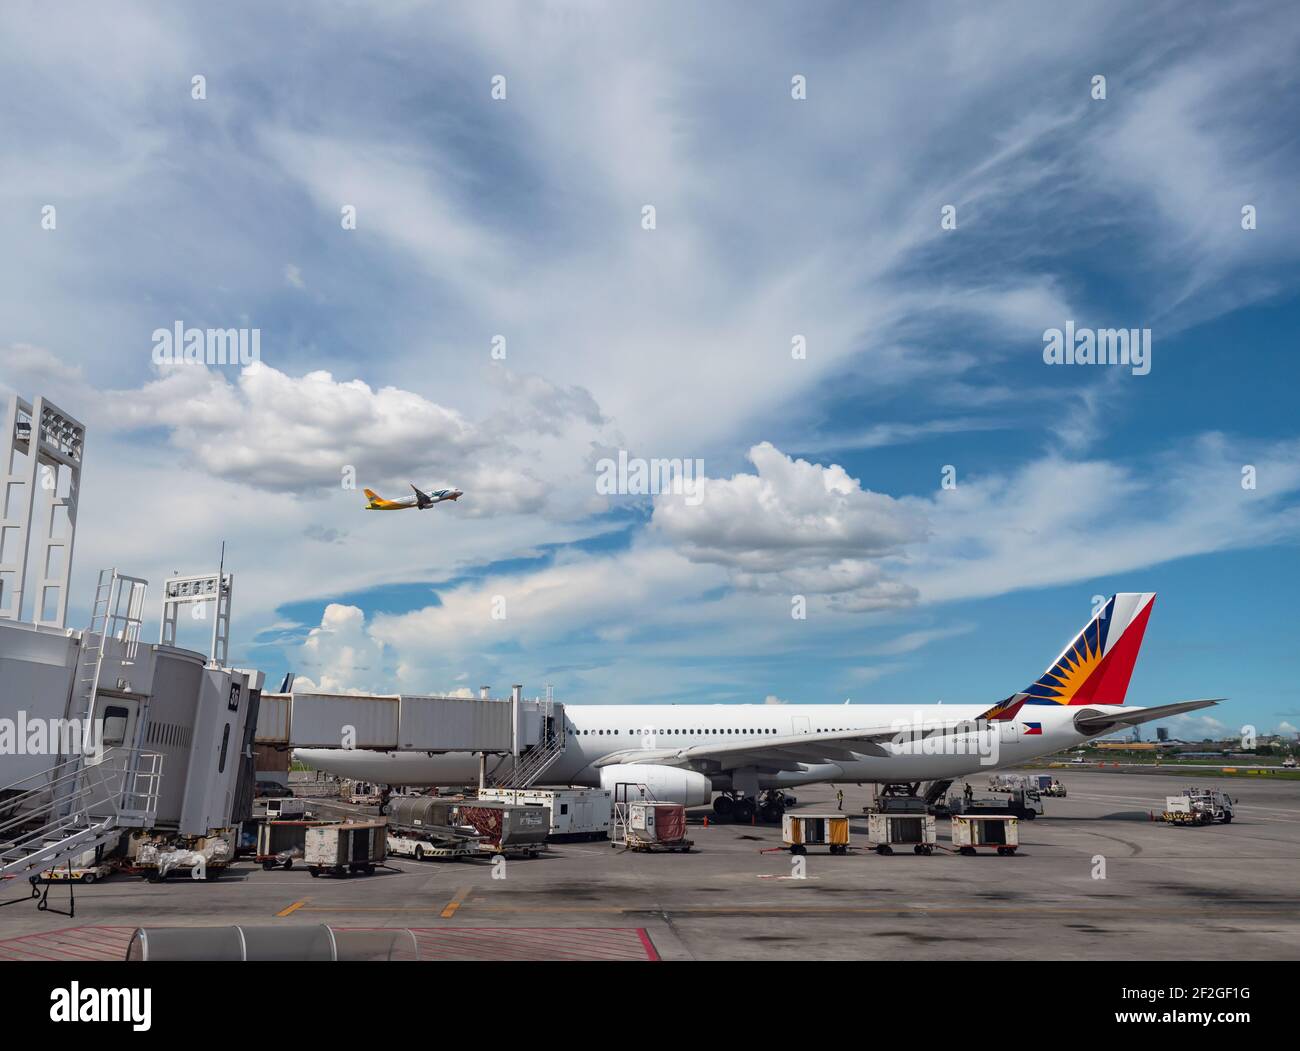 Philippine Airlines Airbus A330 en la Terminal 2 del Aeropuerto Internacional Ninoy Aquino en Manila, con Cebu Pacific Airbus A320 volando por encima. Foto de stock